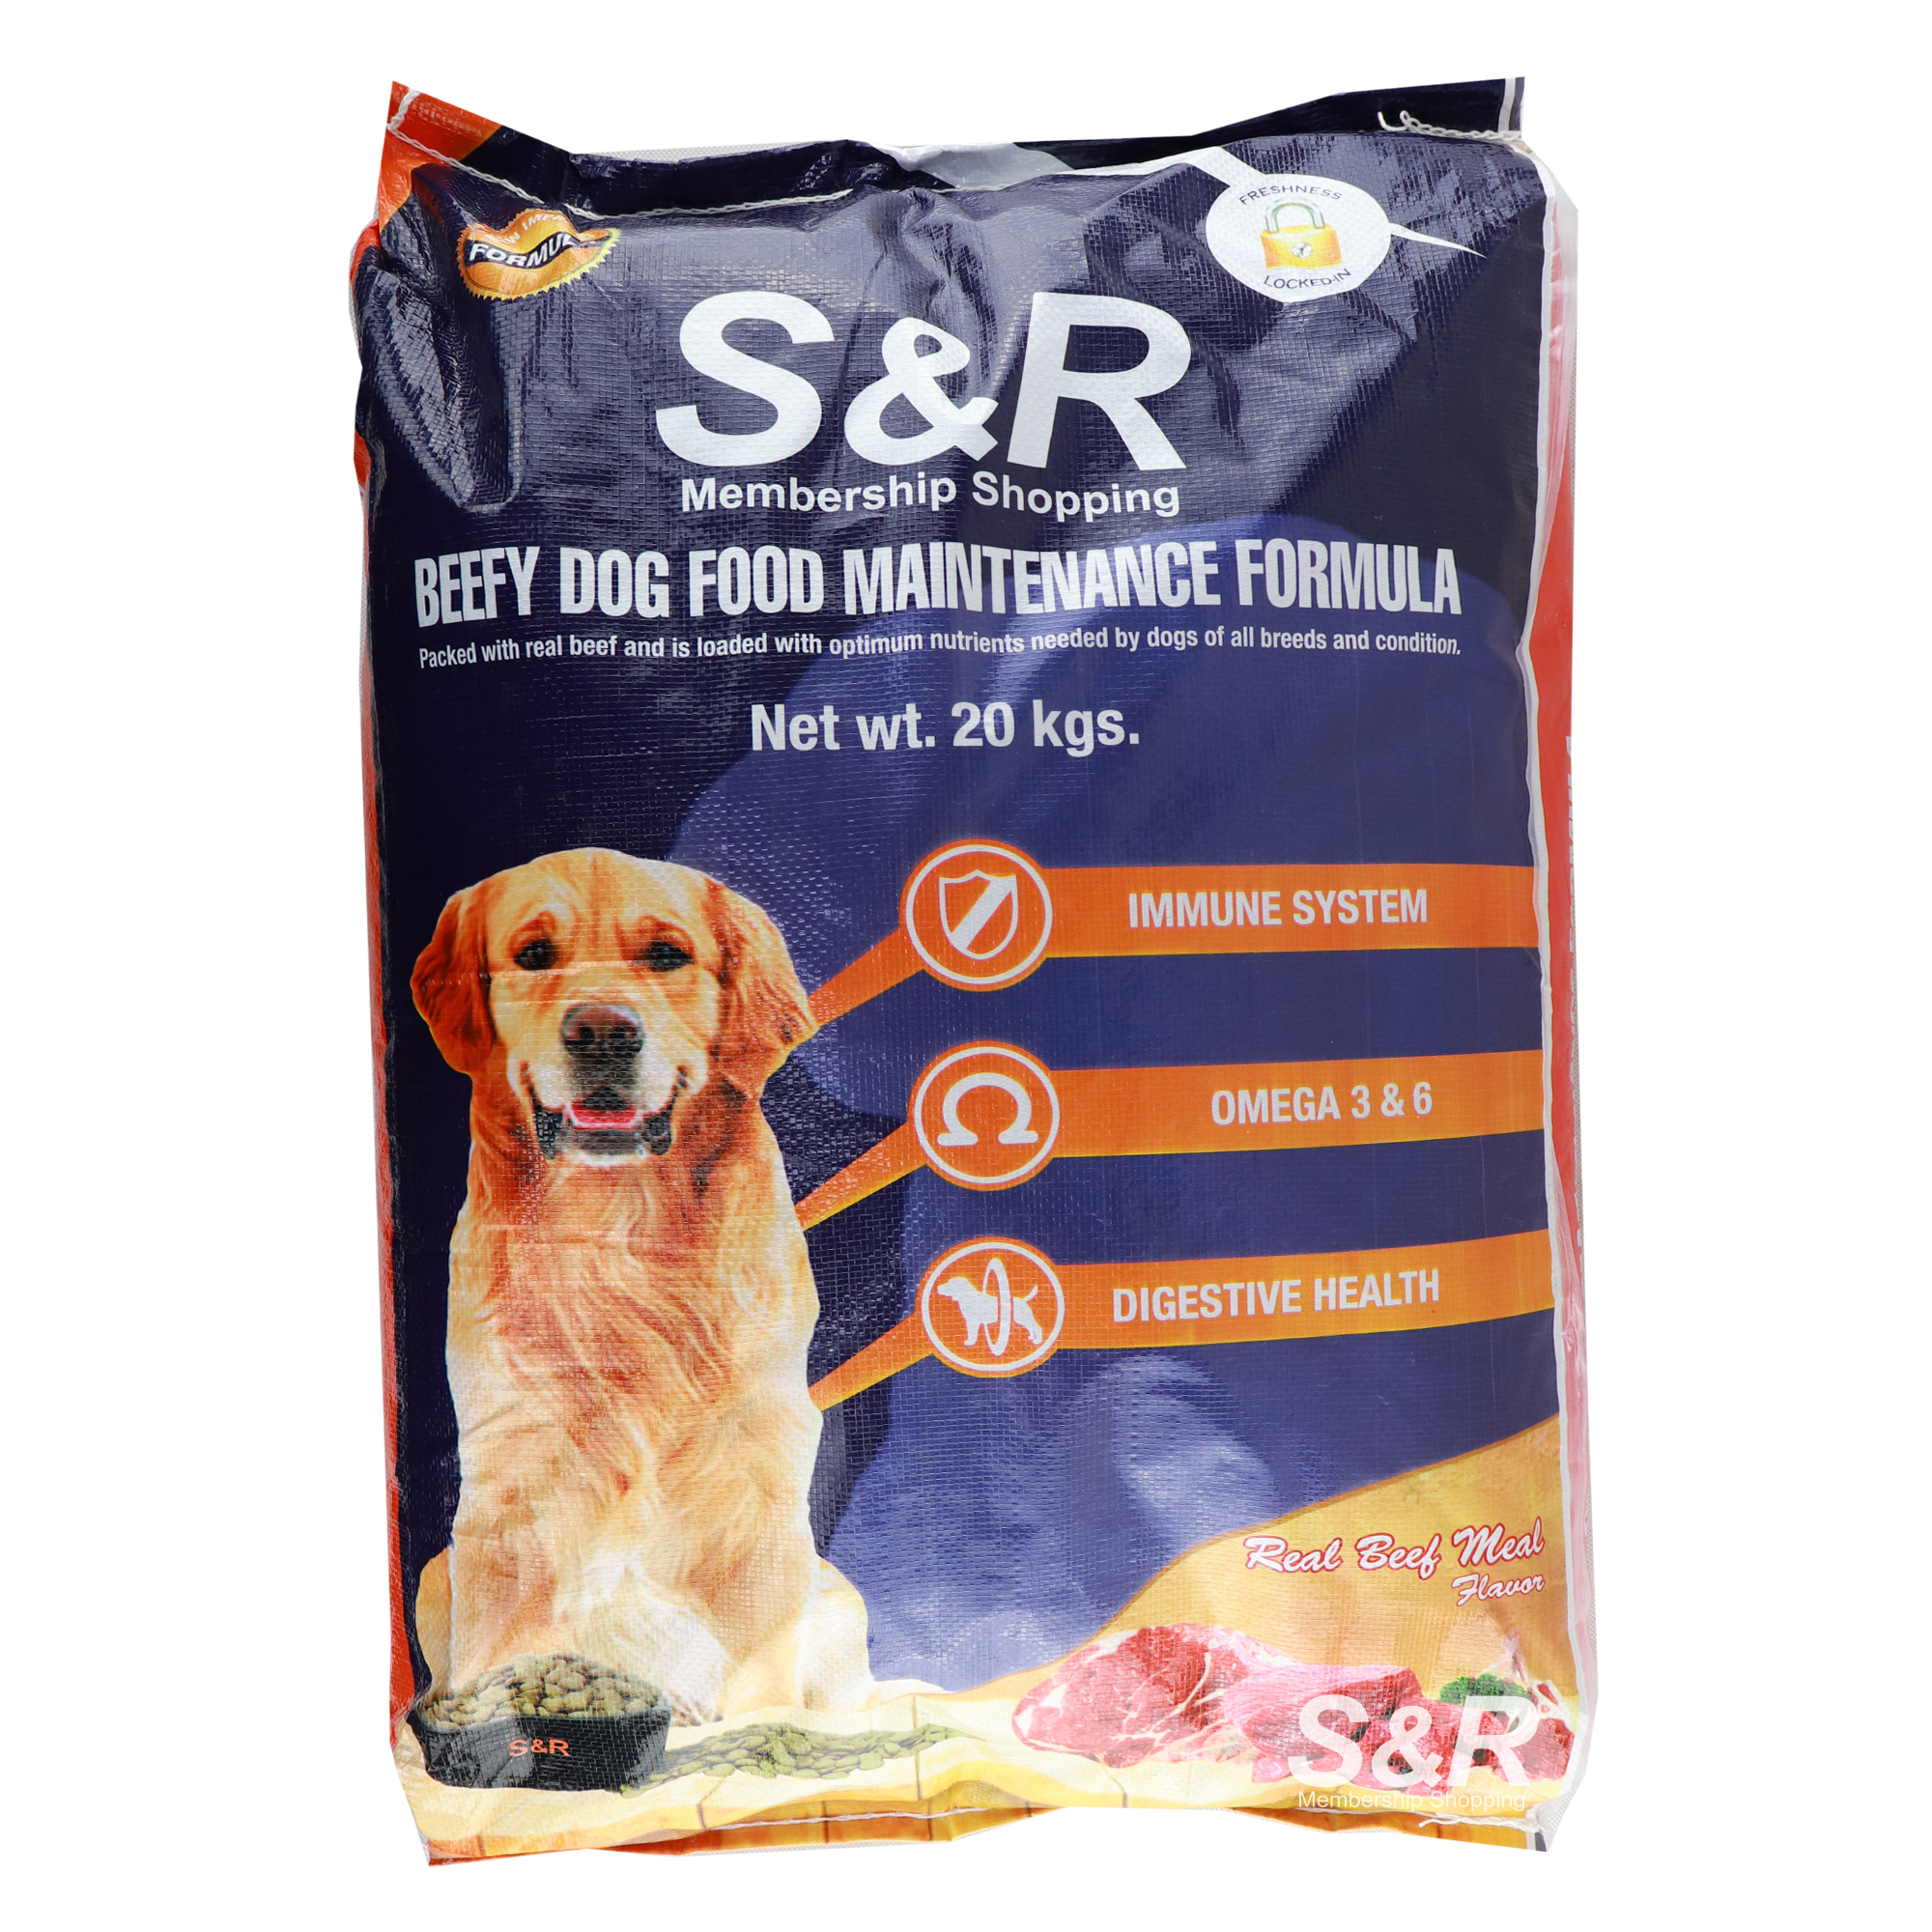 S&R Beefy Dog Food Maintenance Formula Dry Dog Food 20kg